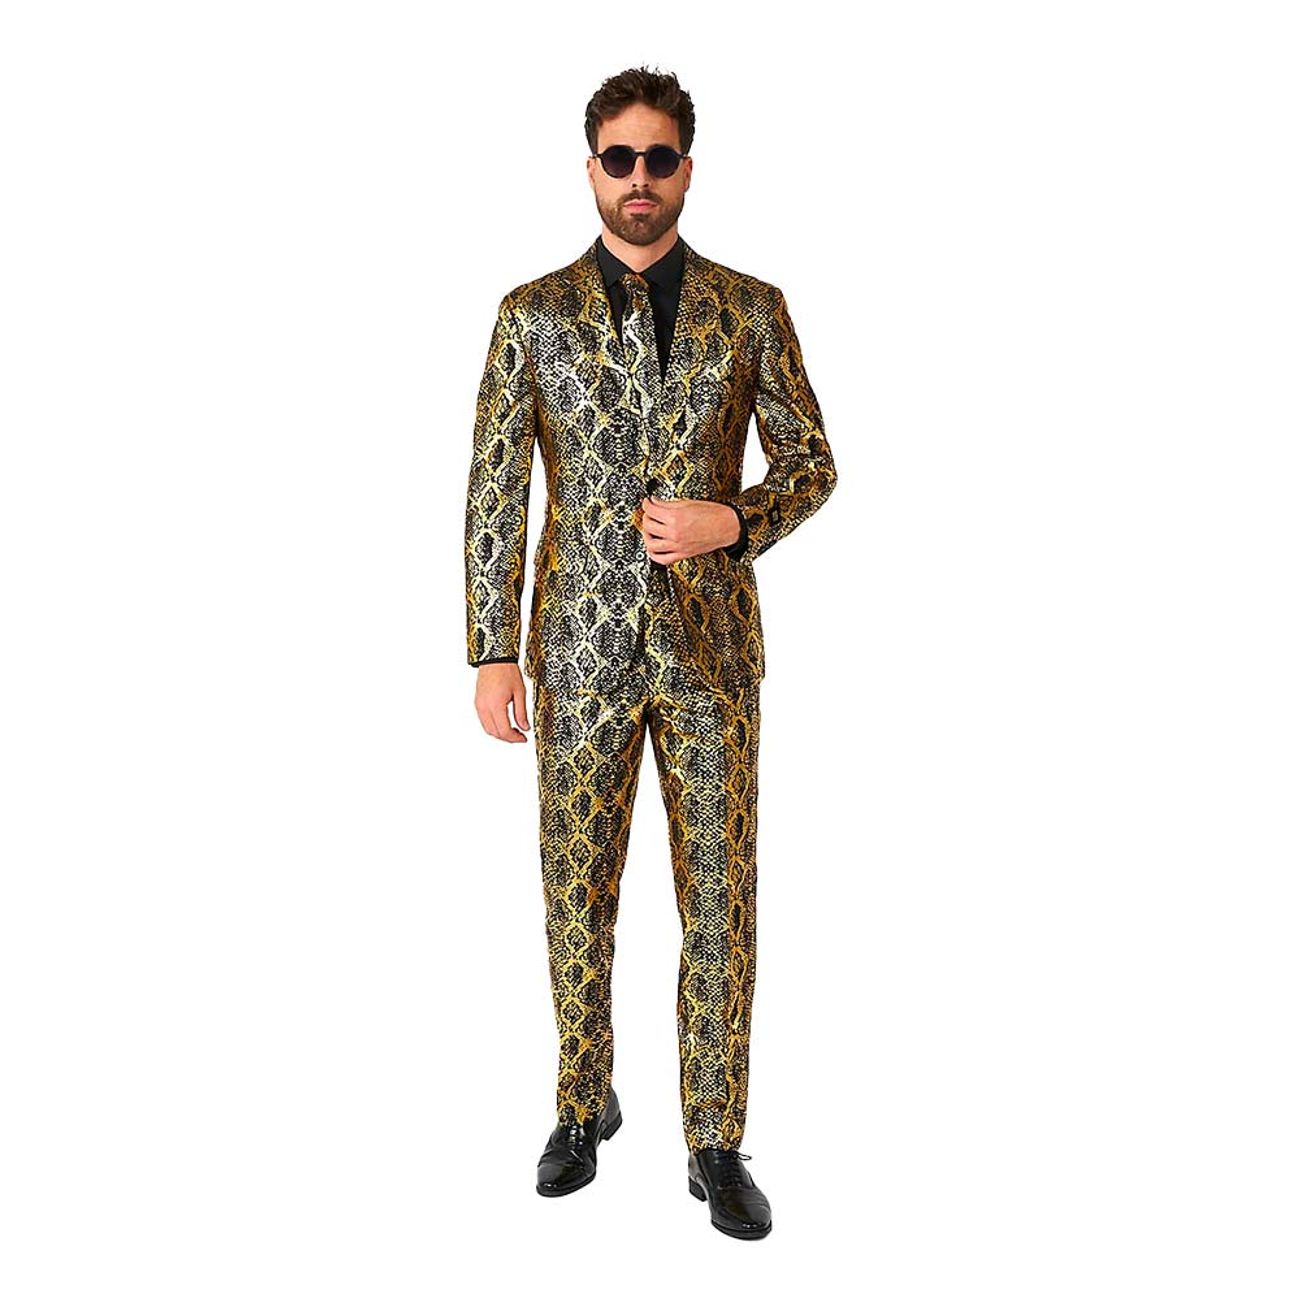 opposuits-shiny-snake-kostym-98001-1